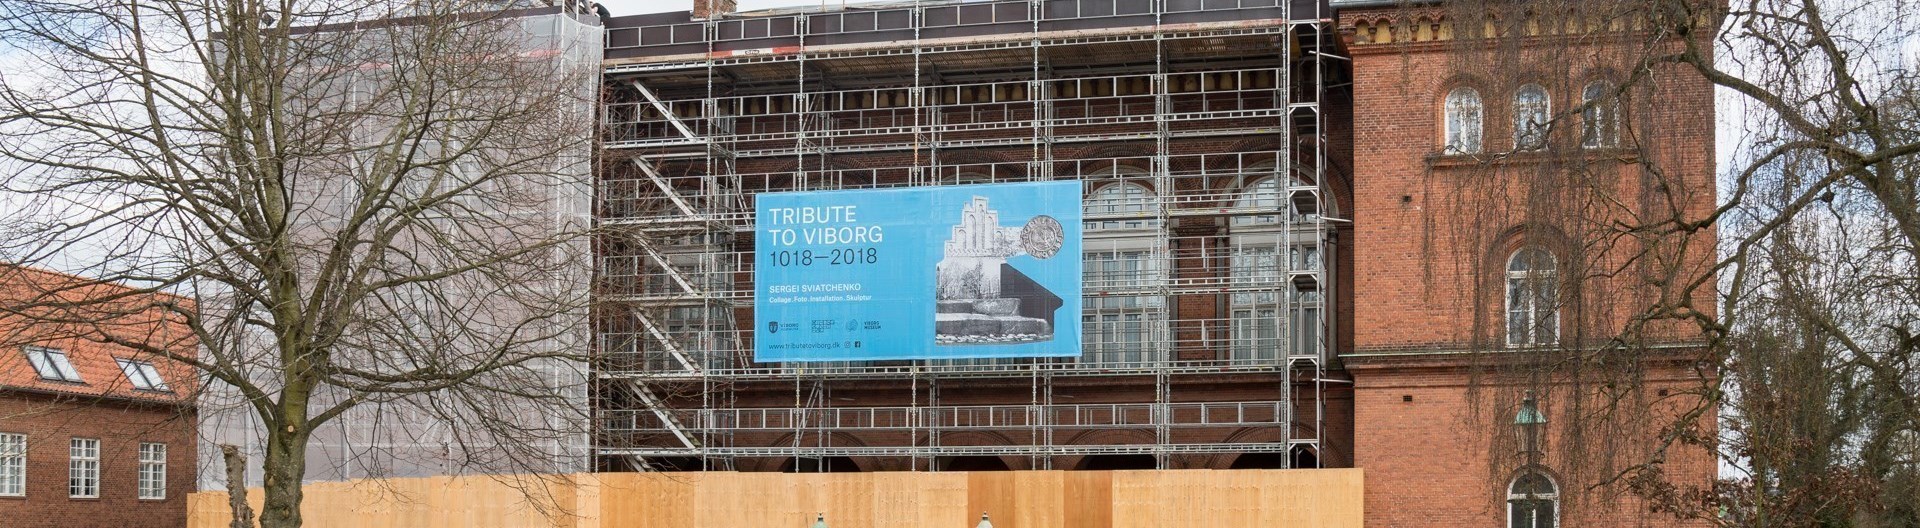 Tribute to Viborg banner på det gamle rådhus